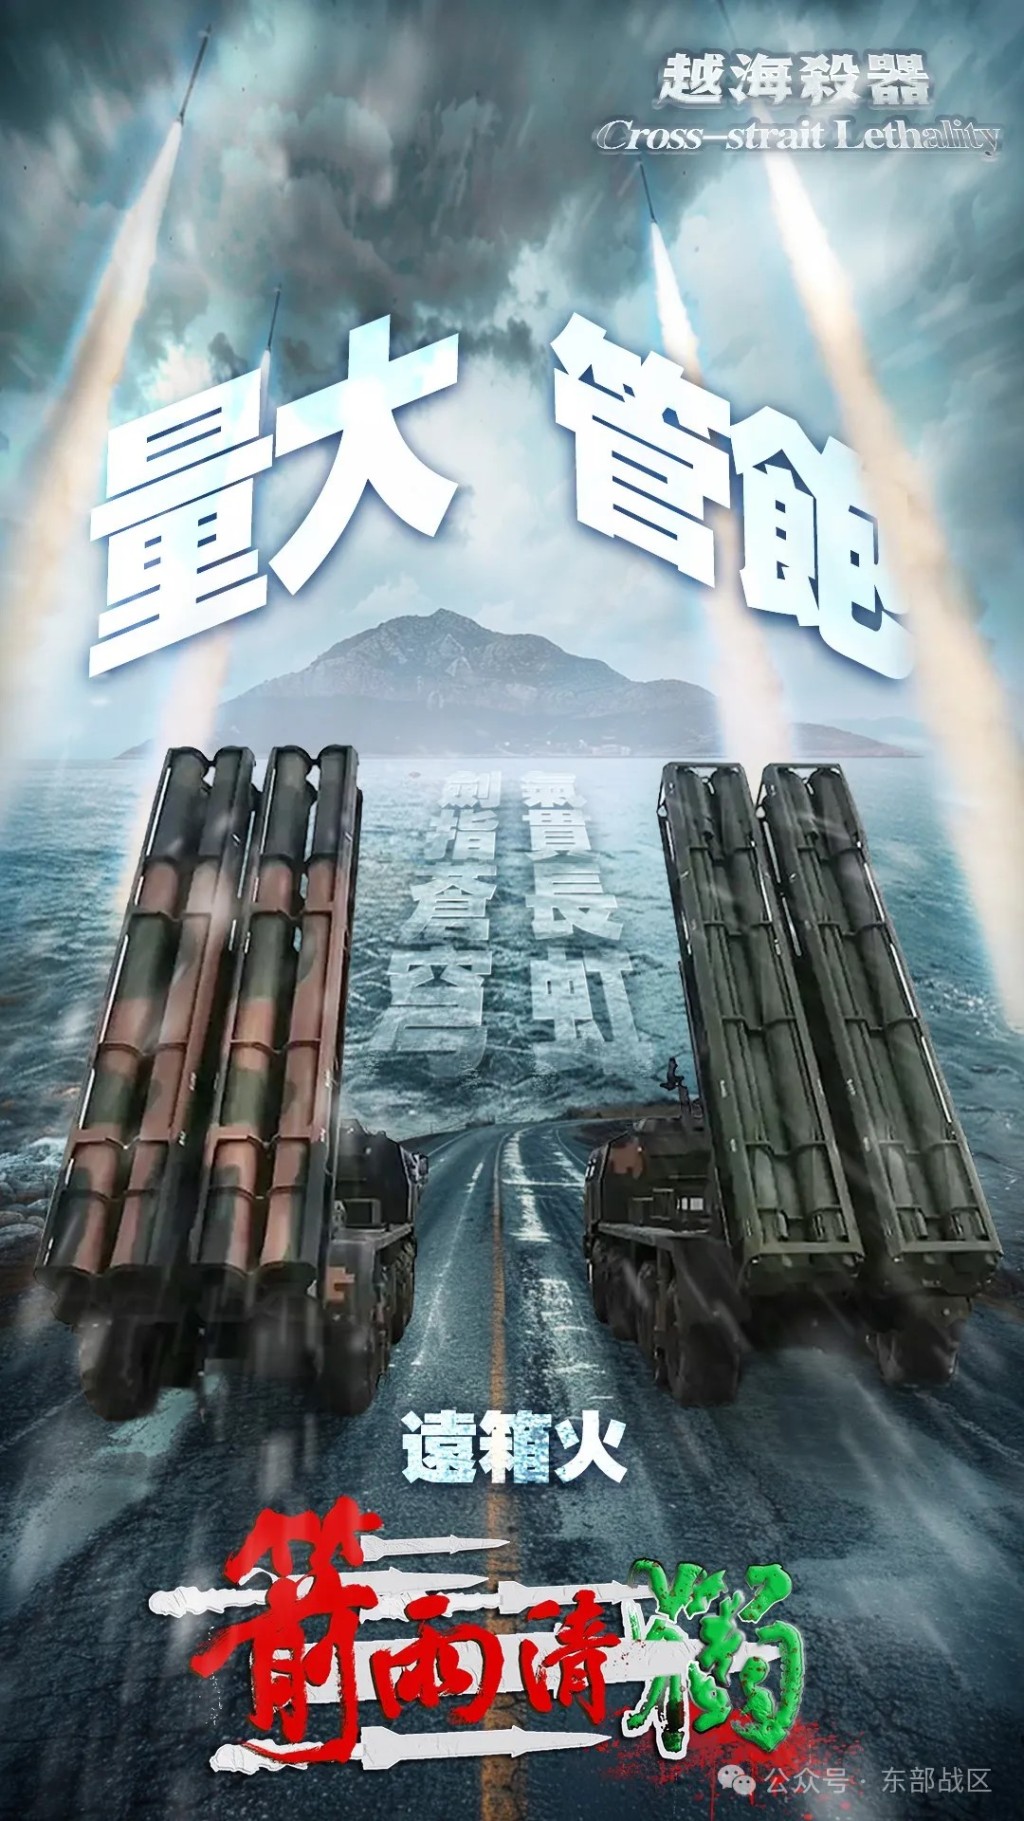 东部战区的「越海杀器」系列海报。